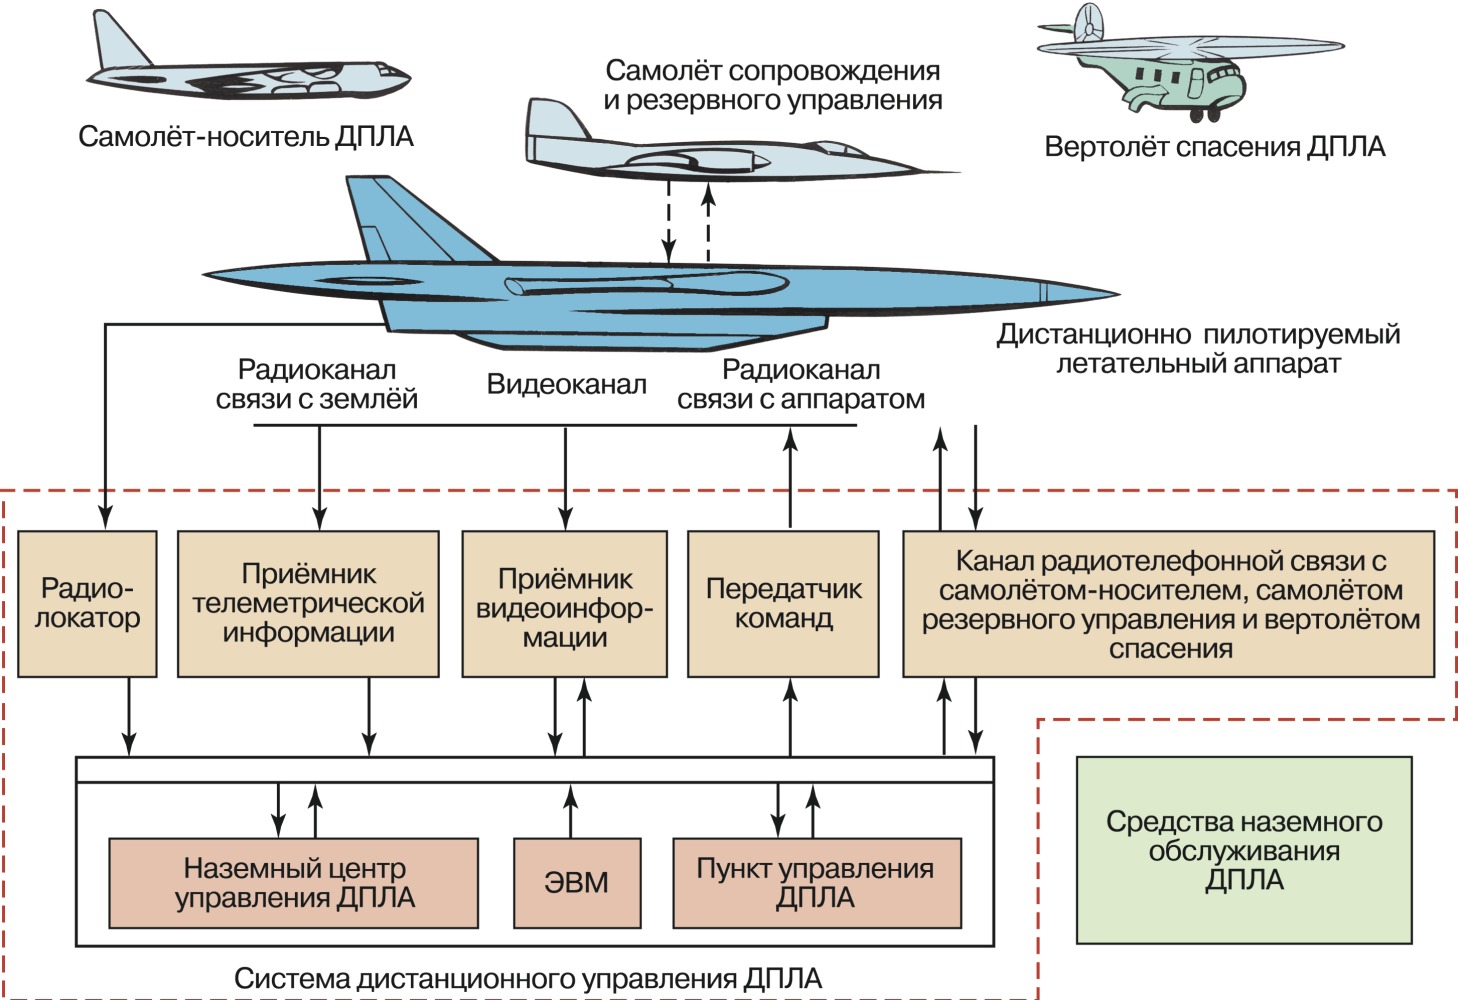 Беспилотное воздушное судно кратко. Классификация БПЛА самолетного типа. Структура БПЛА самолетного типа. Структурная схема БПЛА самолетного типа. Система электроснабжения БПЛА.